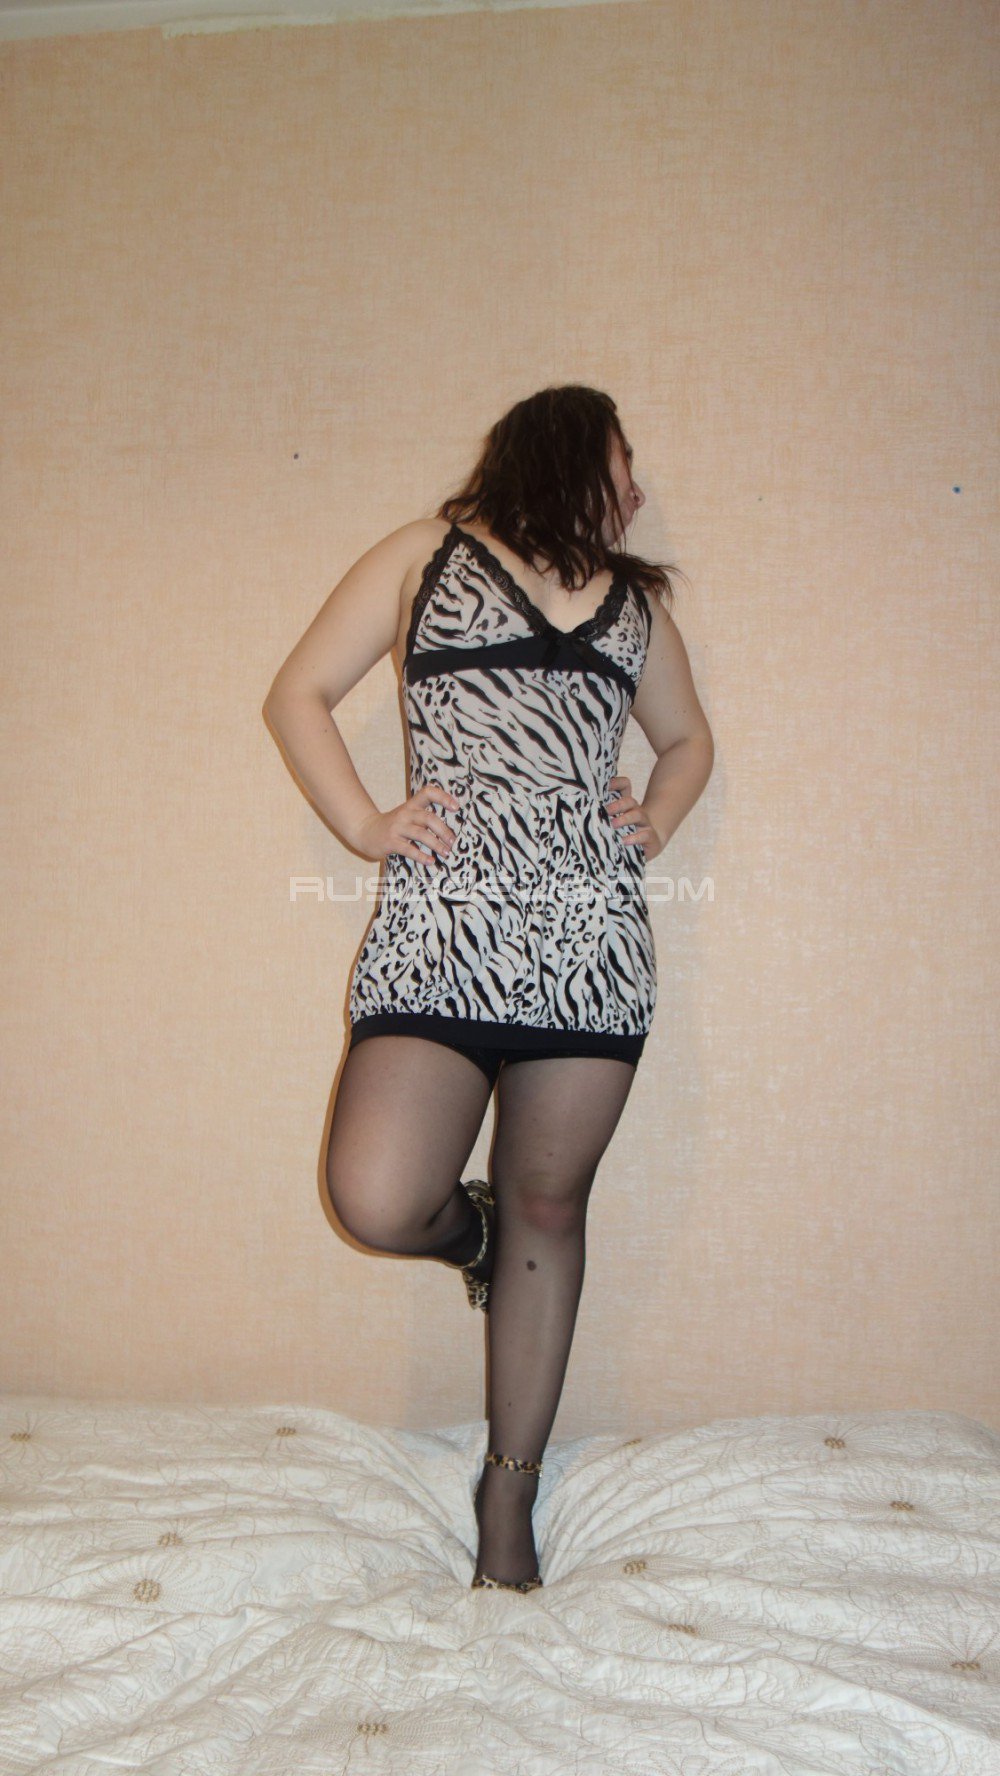 Проститутка Катя возрастом 22 с ростом 165 см для интима в Москве